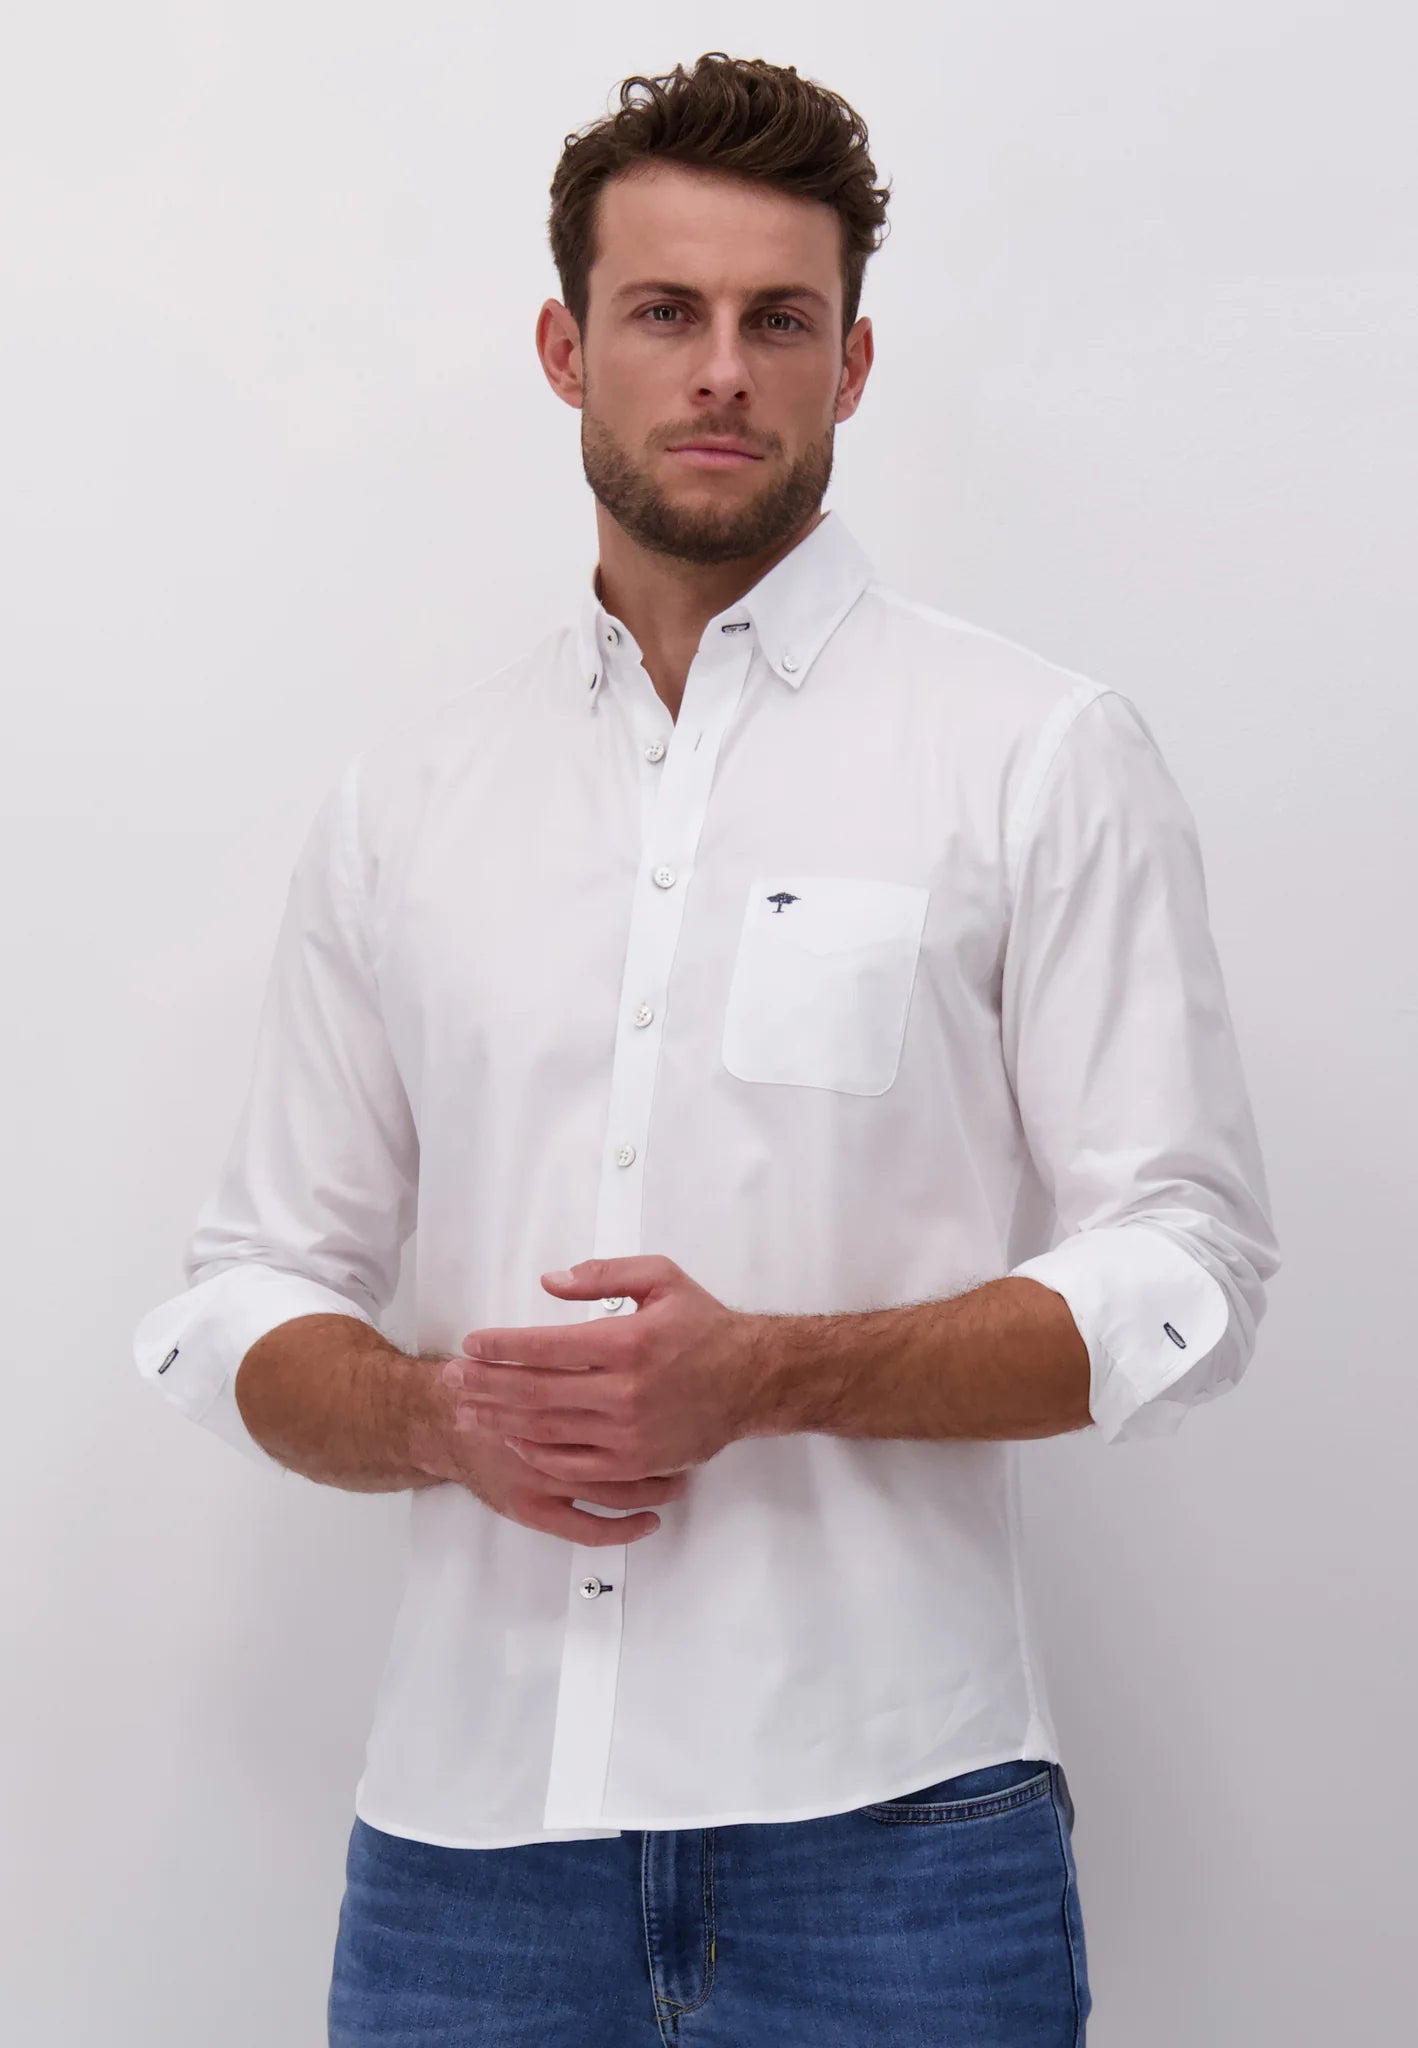 FYNCH HATTON Oxford Shirt - Men's Soft Cotton – White